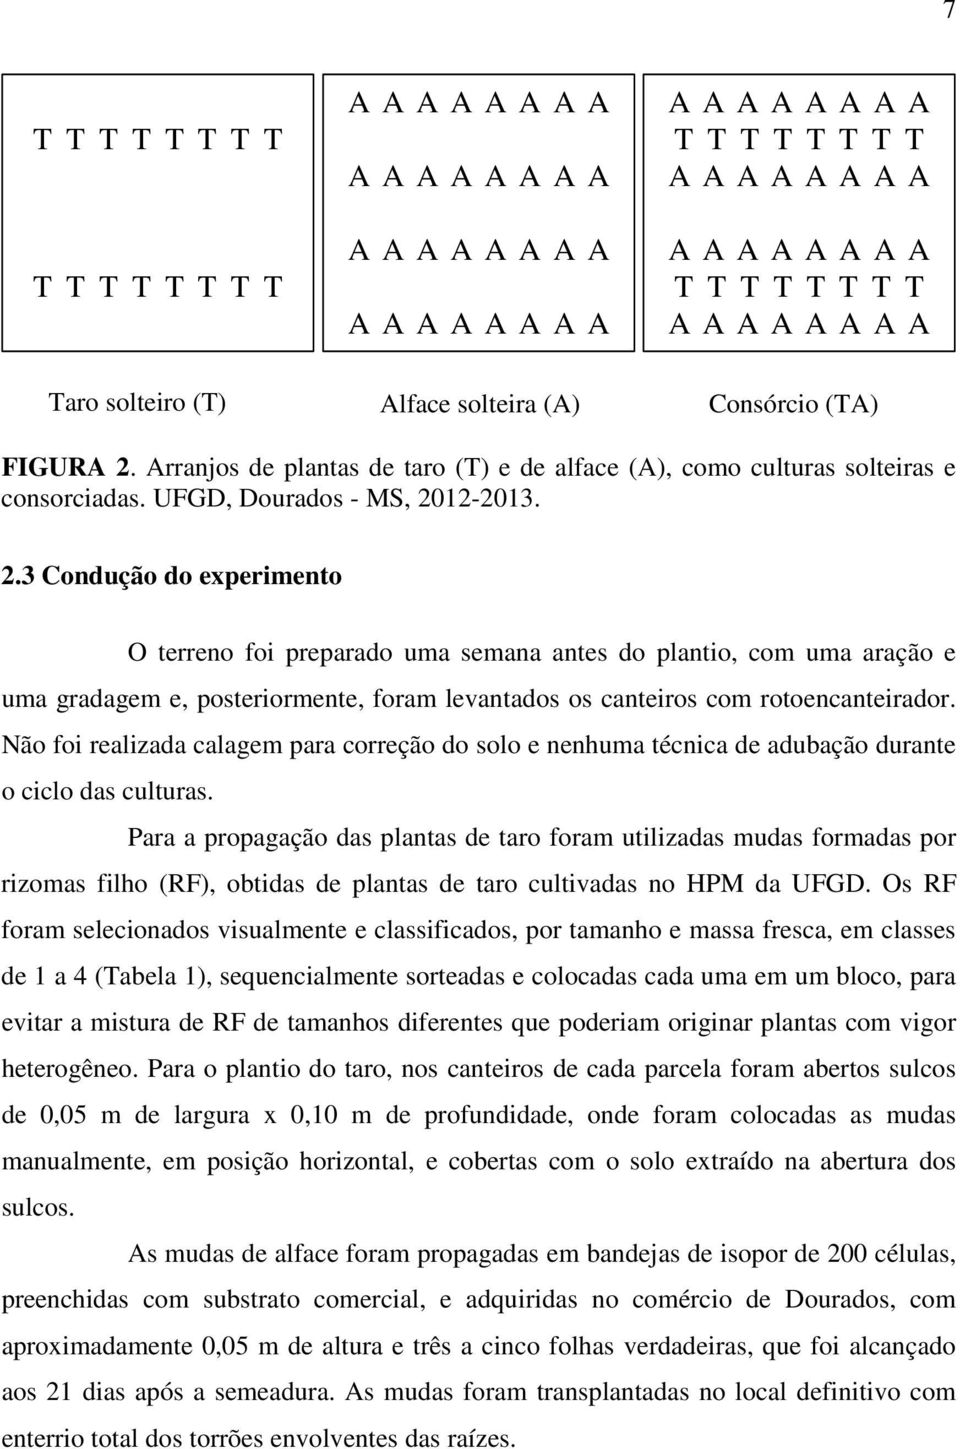 Arranjos de plantas de taro (T) e de alface (A), como culturas solteiras e consorciadas. UFGD, Dourados - MS, 20